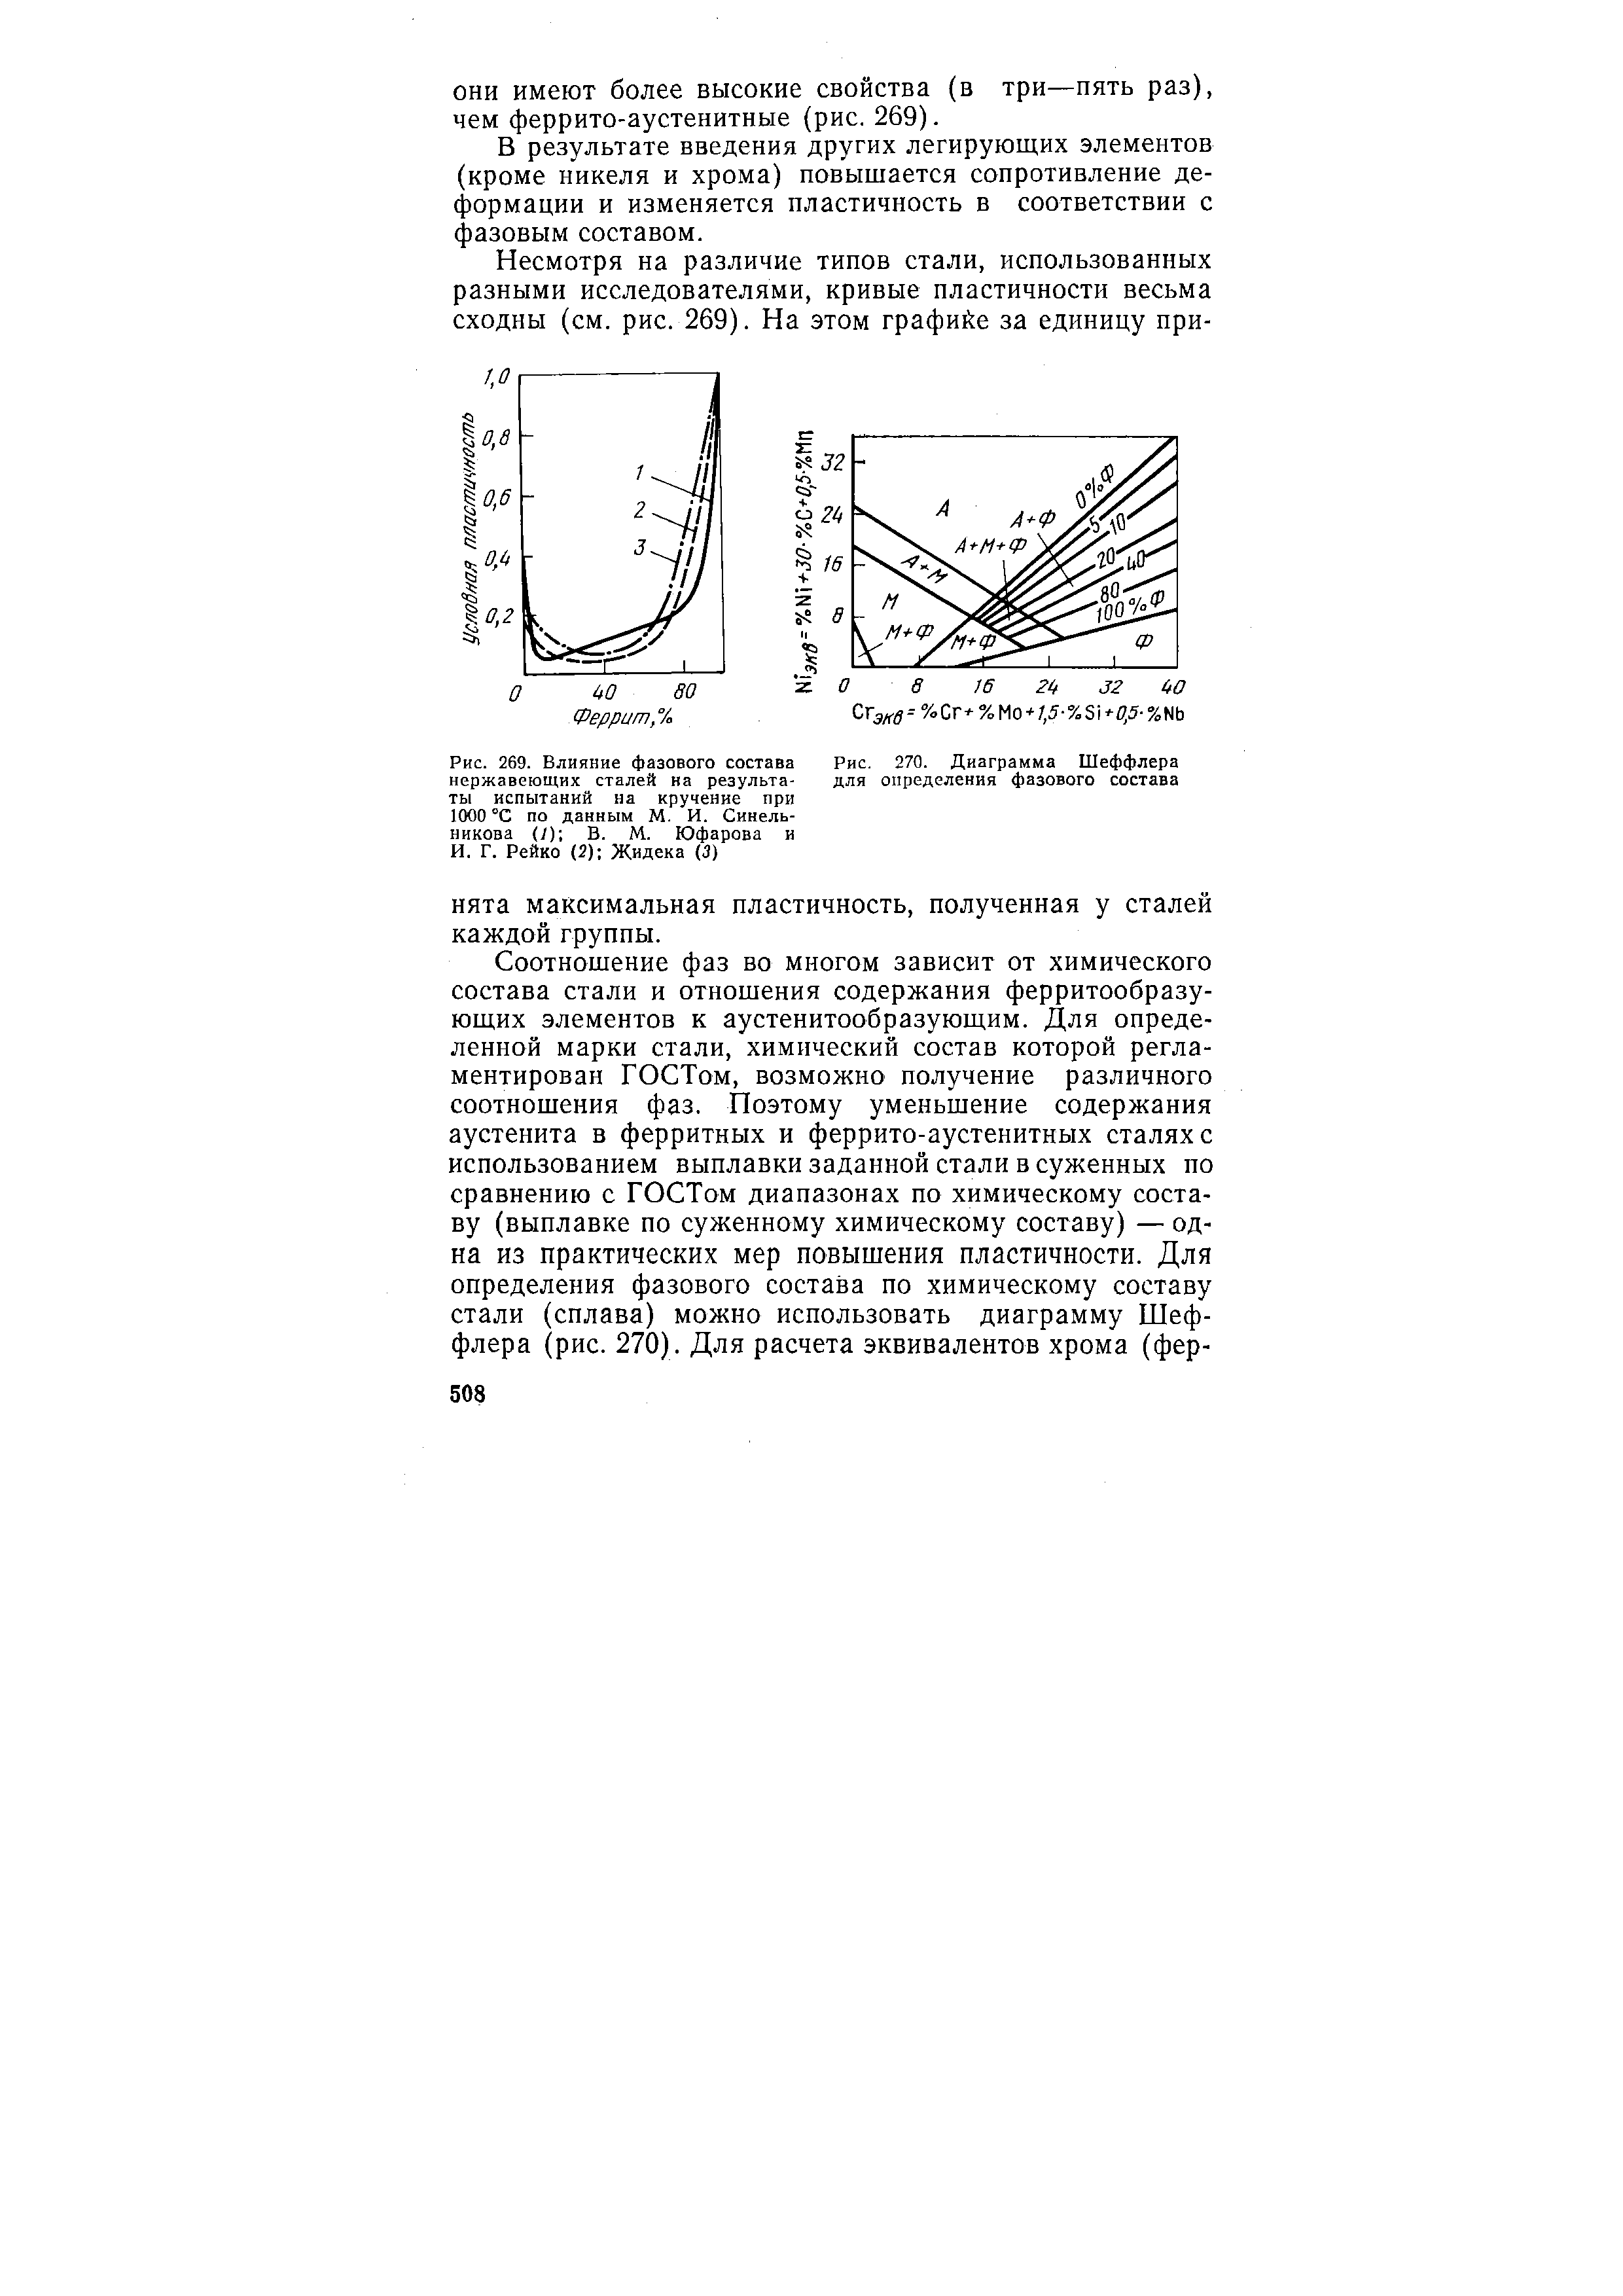 Рис. 270. Диаграмма Шеффлера для определения фазового состава
